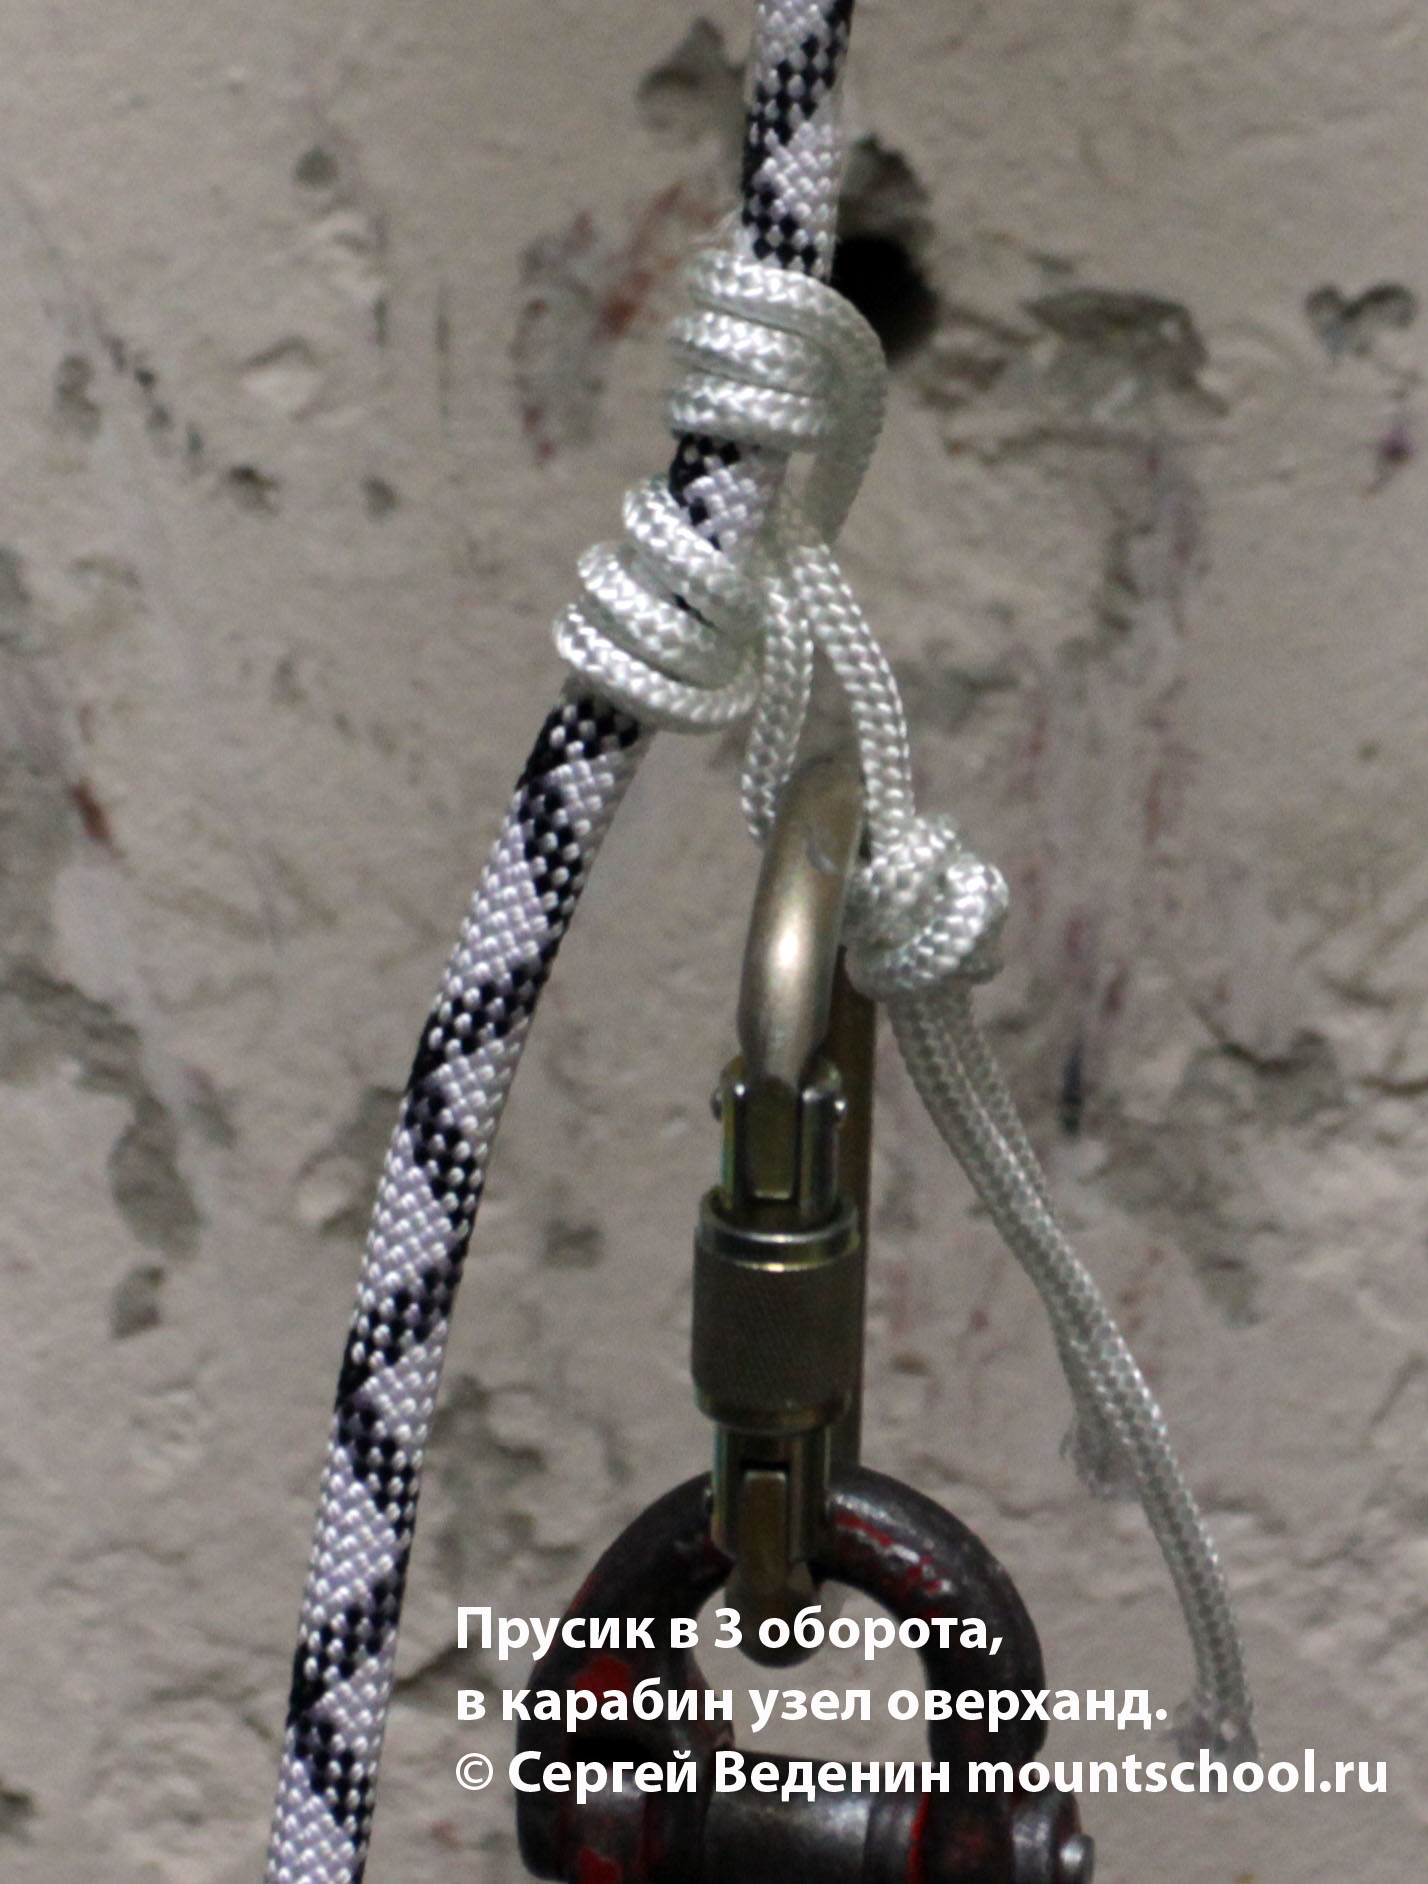 Схватывающий узел Прусик в 3 оборота, петля завязана узлом оверханд (простой узел, проводник)